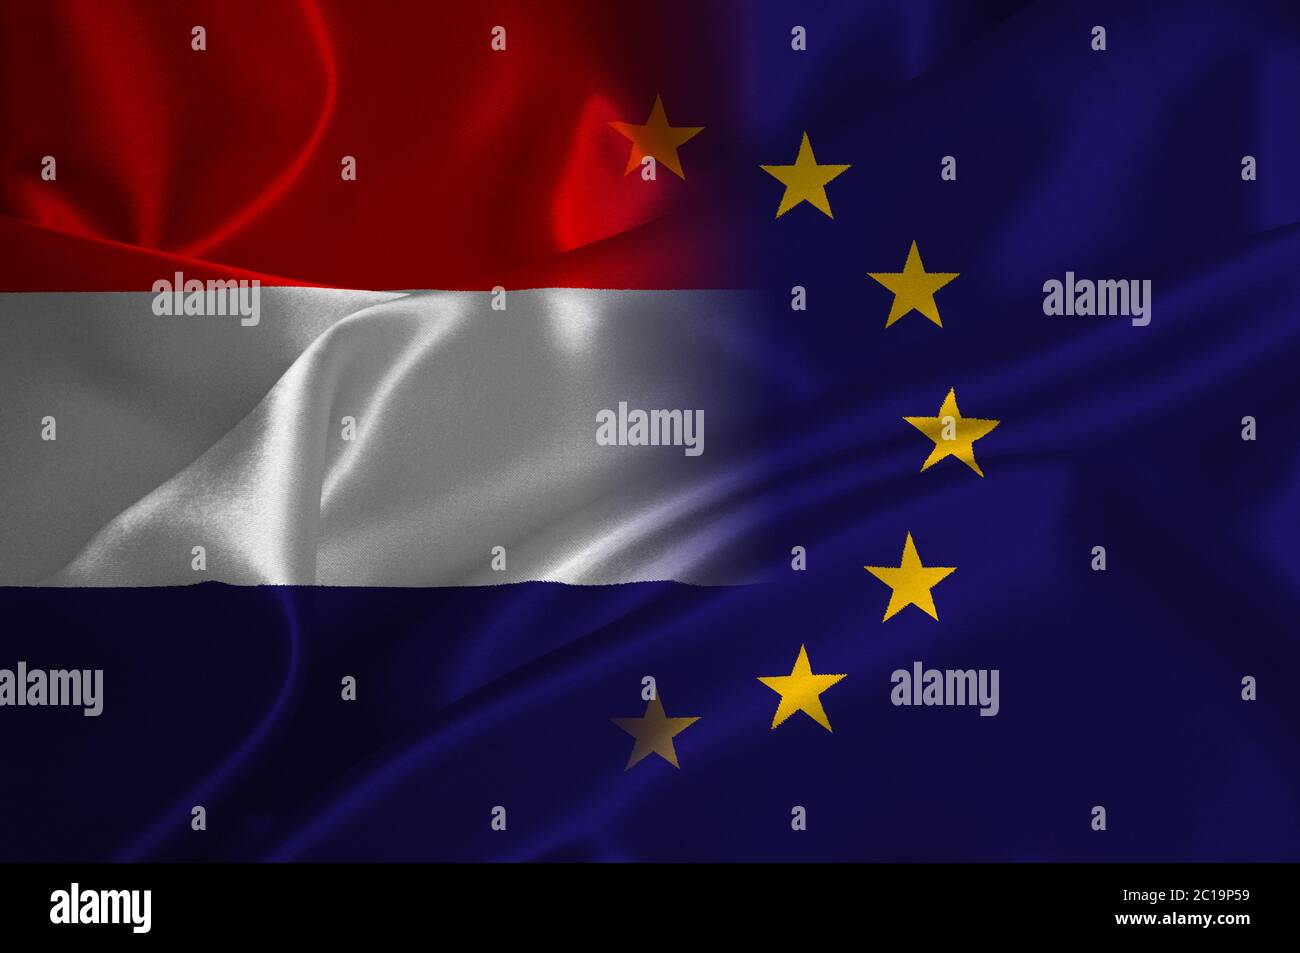 EU flag and Holland flag on satin texture Stock Photo